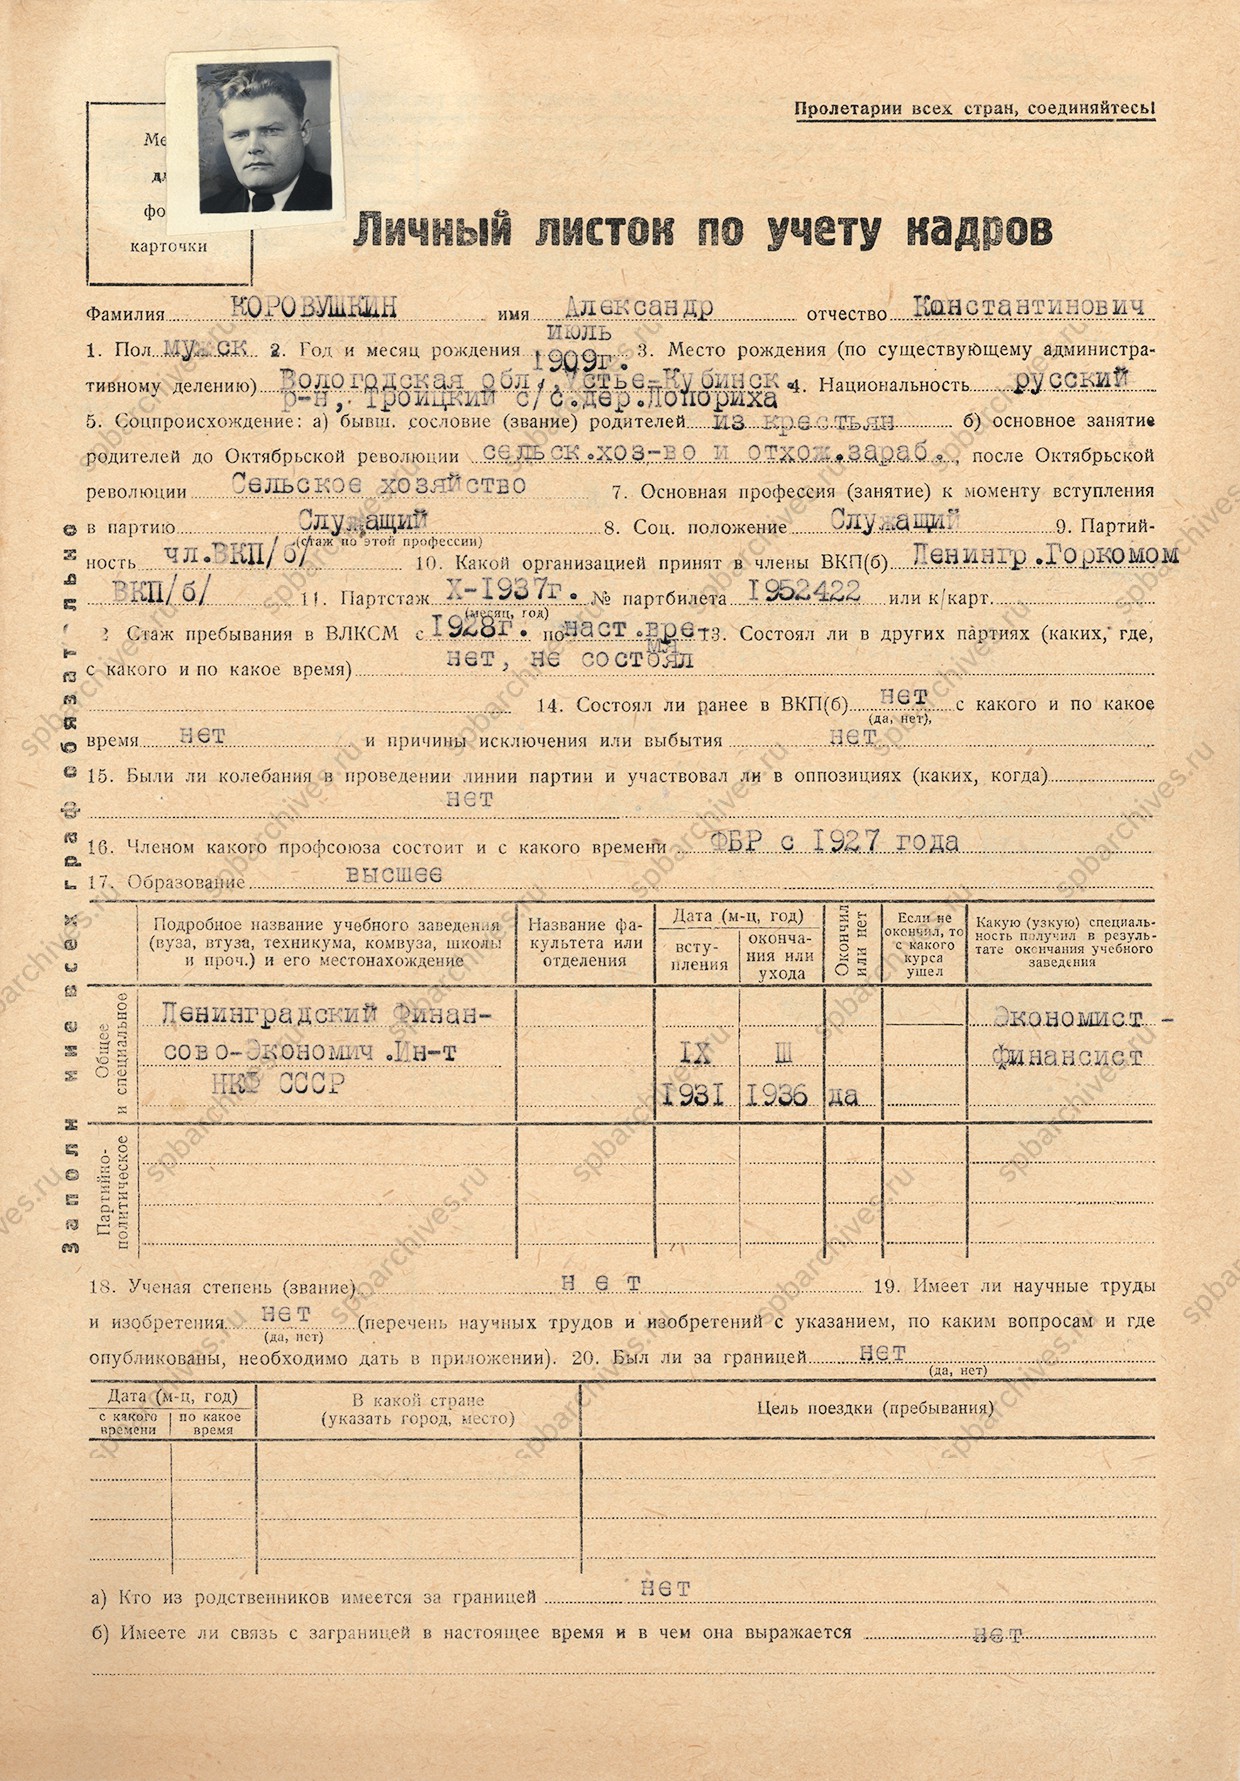 Личный листок по учёту кадров А.К.Коровушкина.<br />
7 апреля 1939 г.<br />
<em>ЦГА СПб. Ф.Р-1728. Оп.1. Д.668817. Л.2.</em>